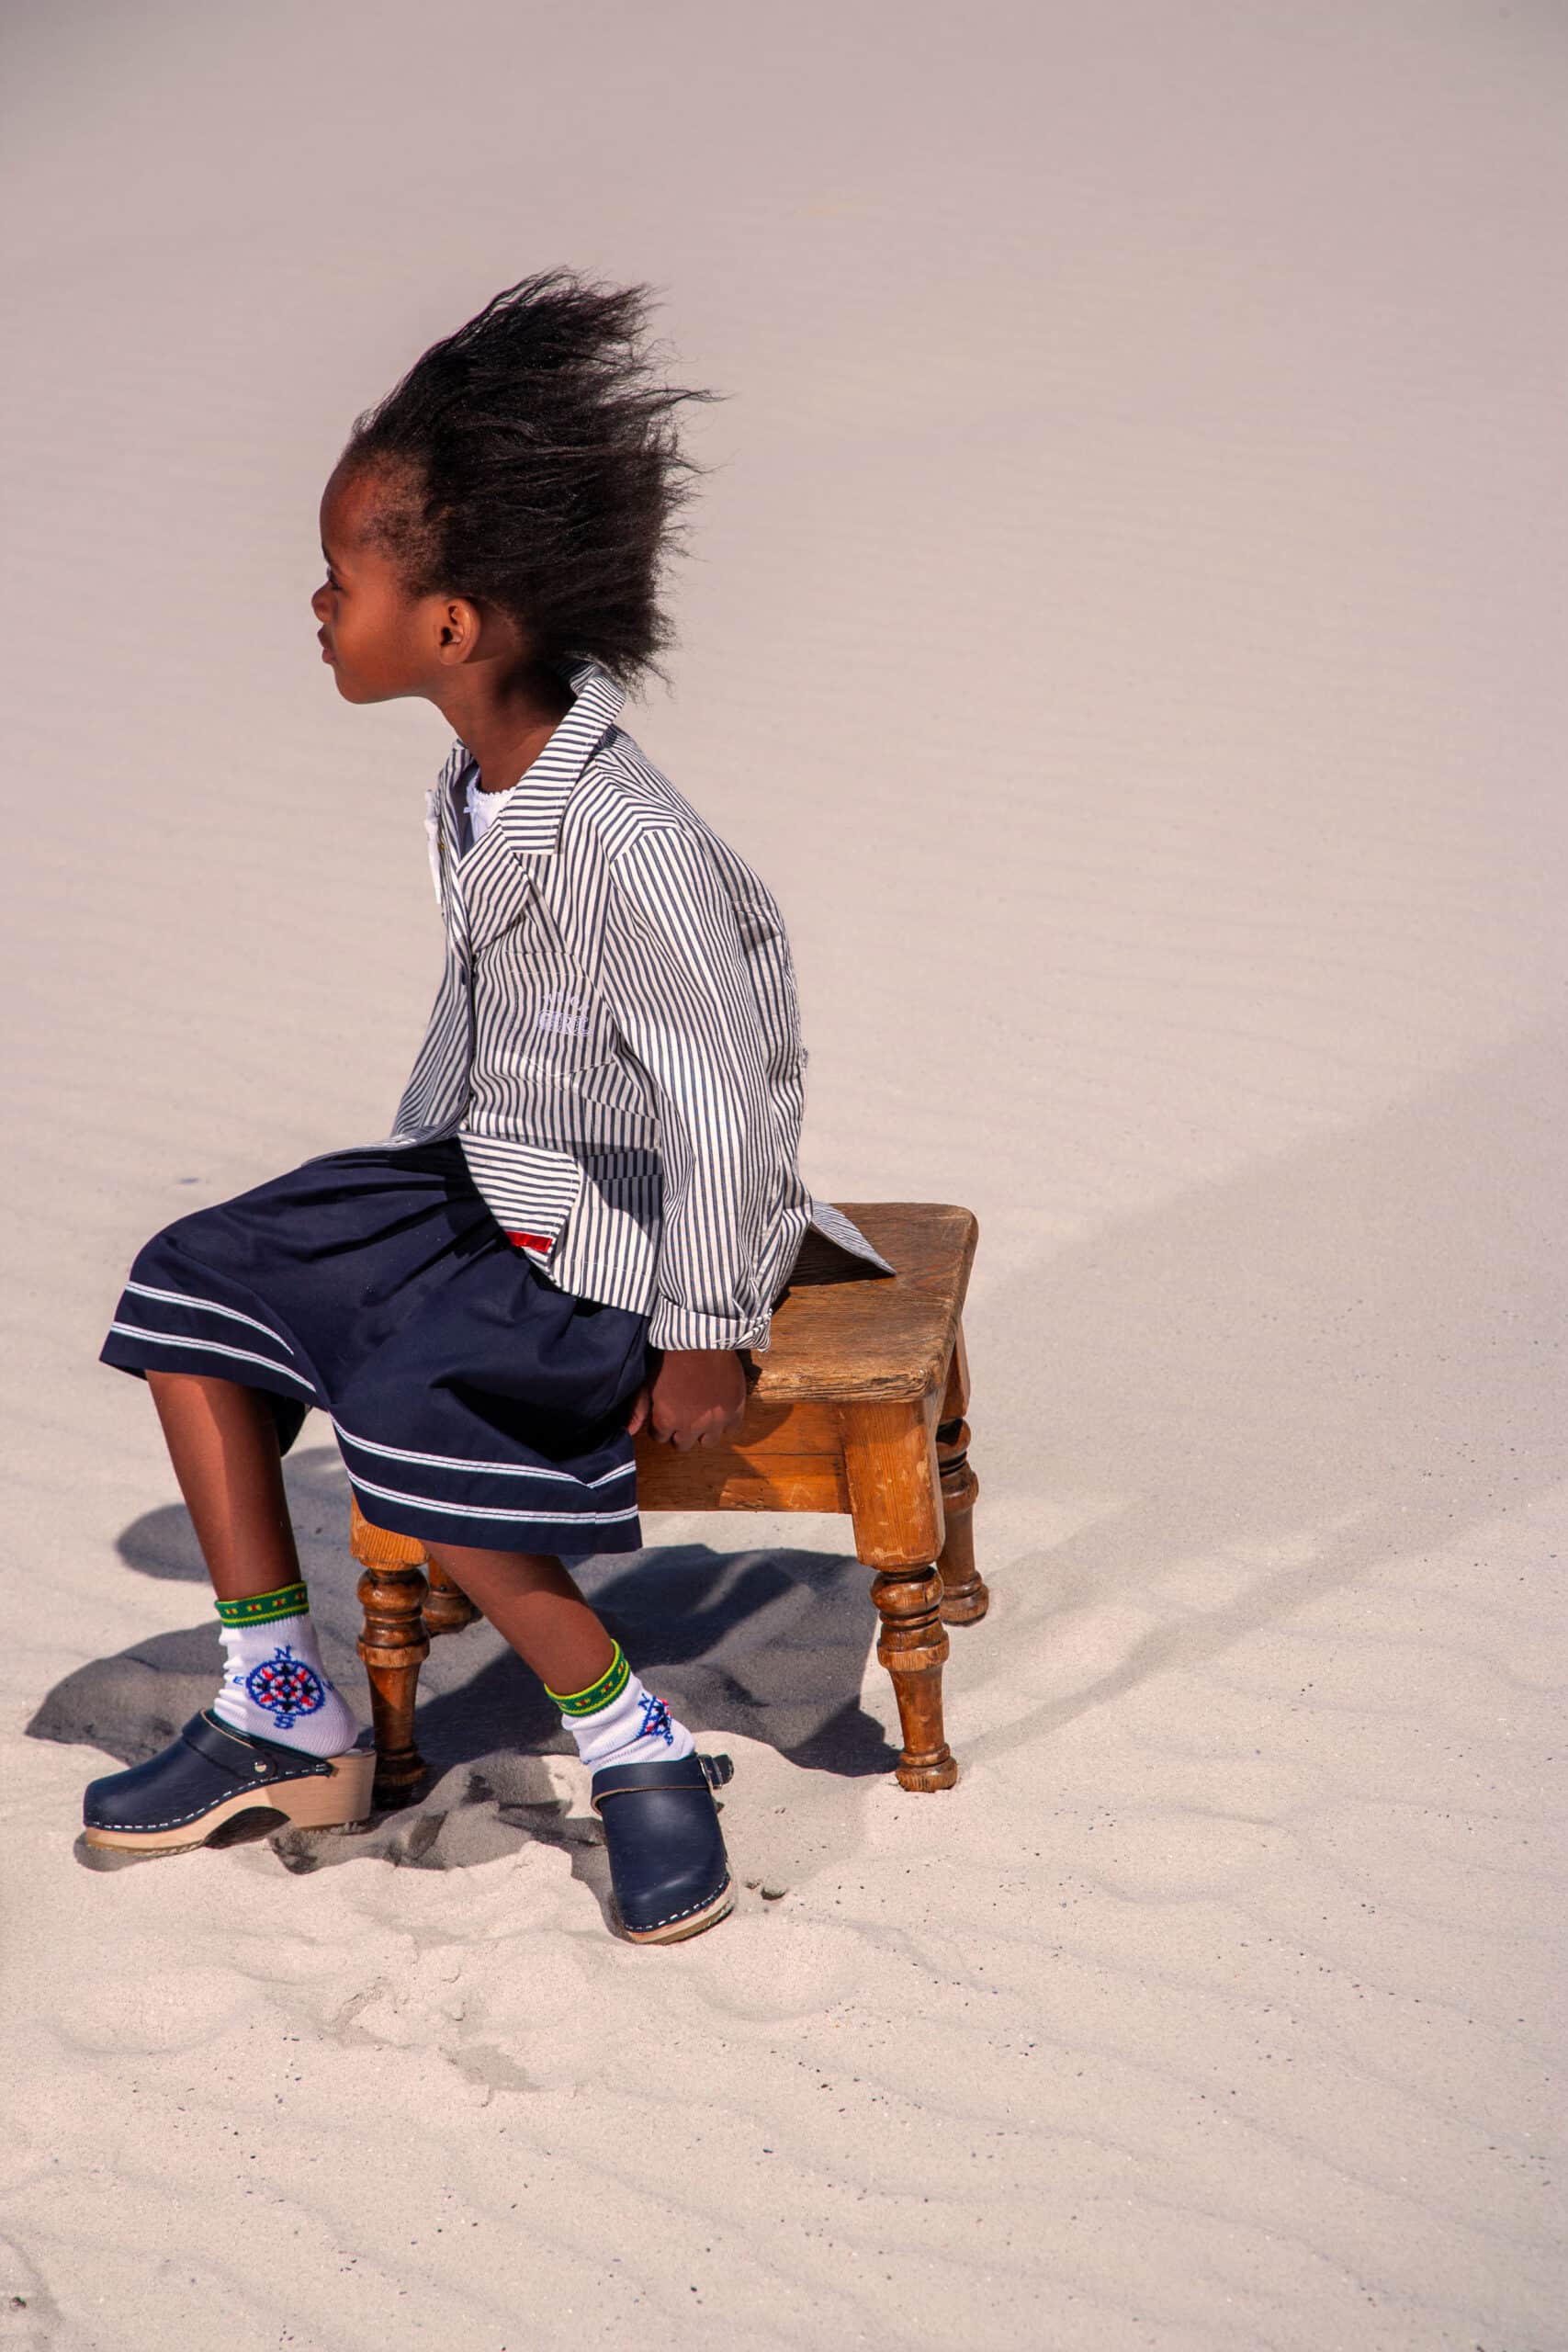 Ein kleines Kind mit einer üppigen Frisur sitzt auf einem alten Holzhocker auf sandigem Untergrund und schaut zur Seite. Es trägt ein gestreiftes Hemd, einen marineblauen Rock und verspielte Socken und Schuhe. © Fotografie Tomas Rodriguez